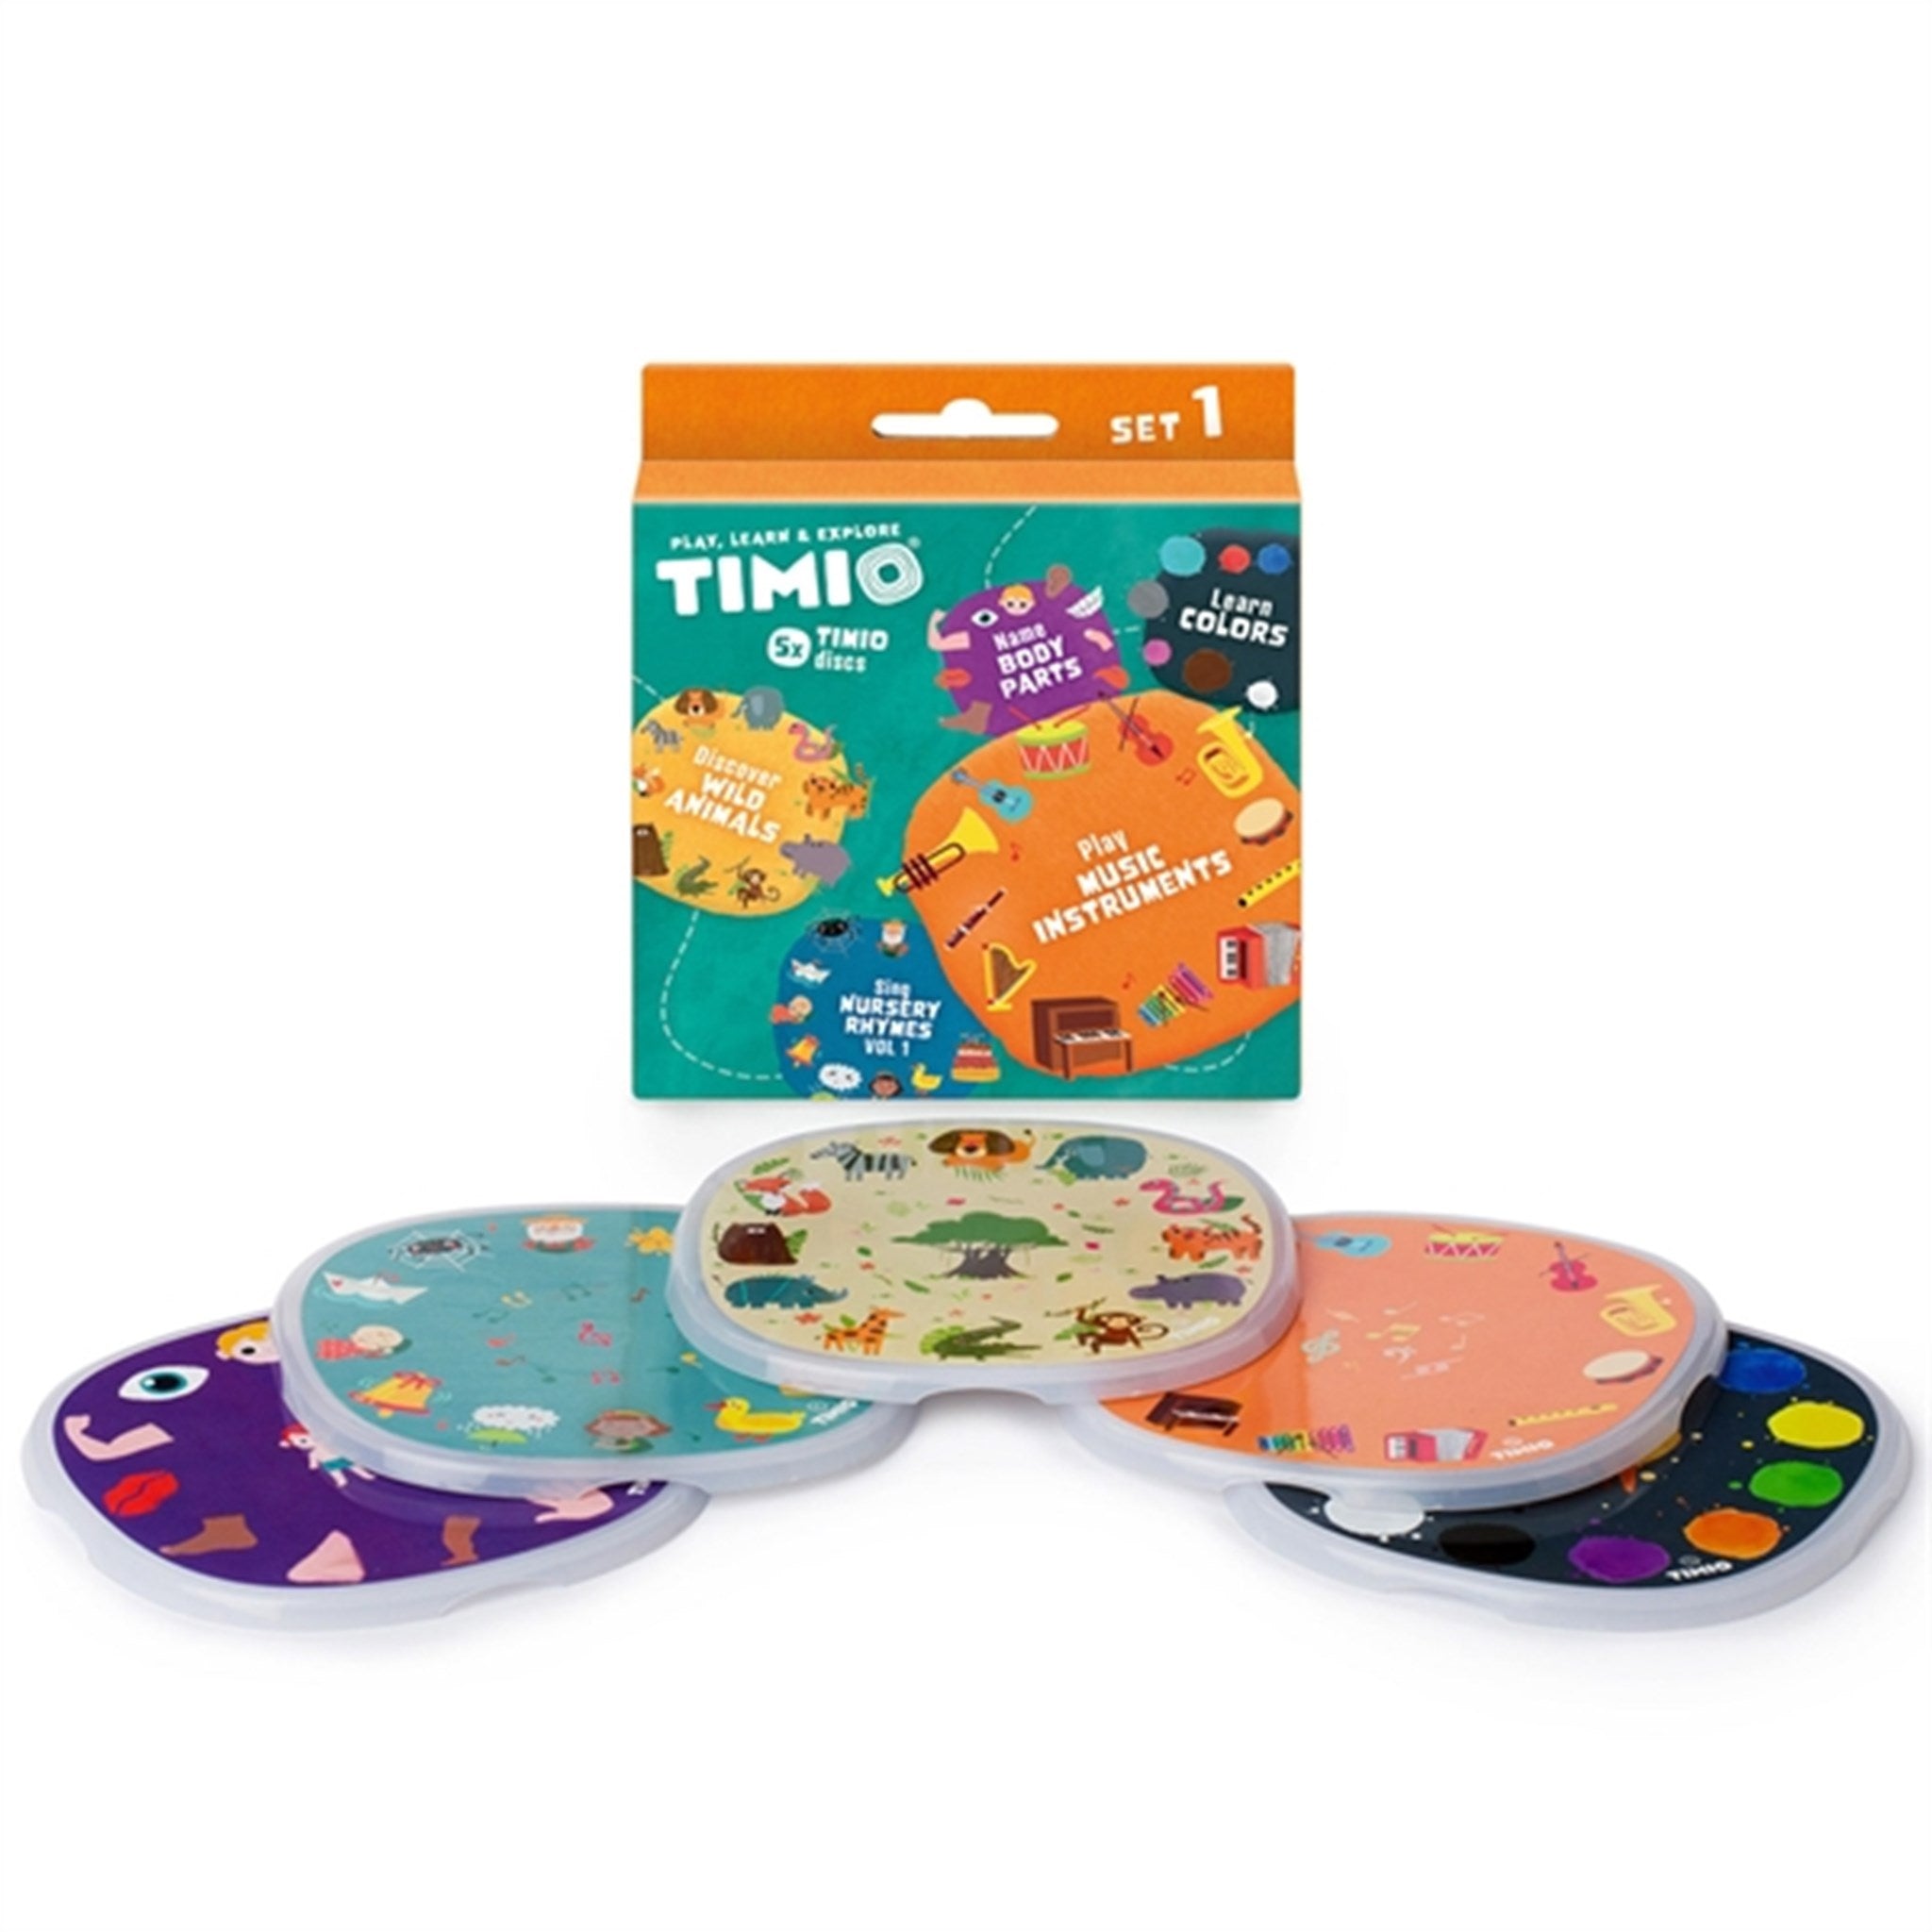 TIMIO® Disc Sæt 1 - Vilde Dyr, Børnerim, Farver, Musik og Kroppens dele